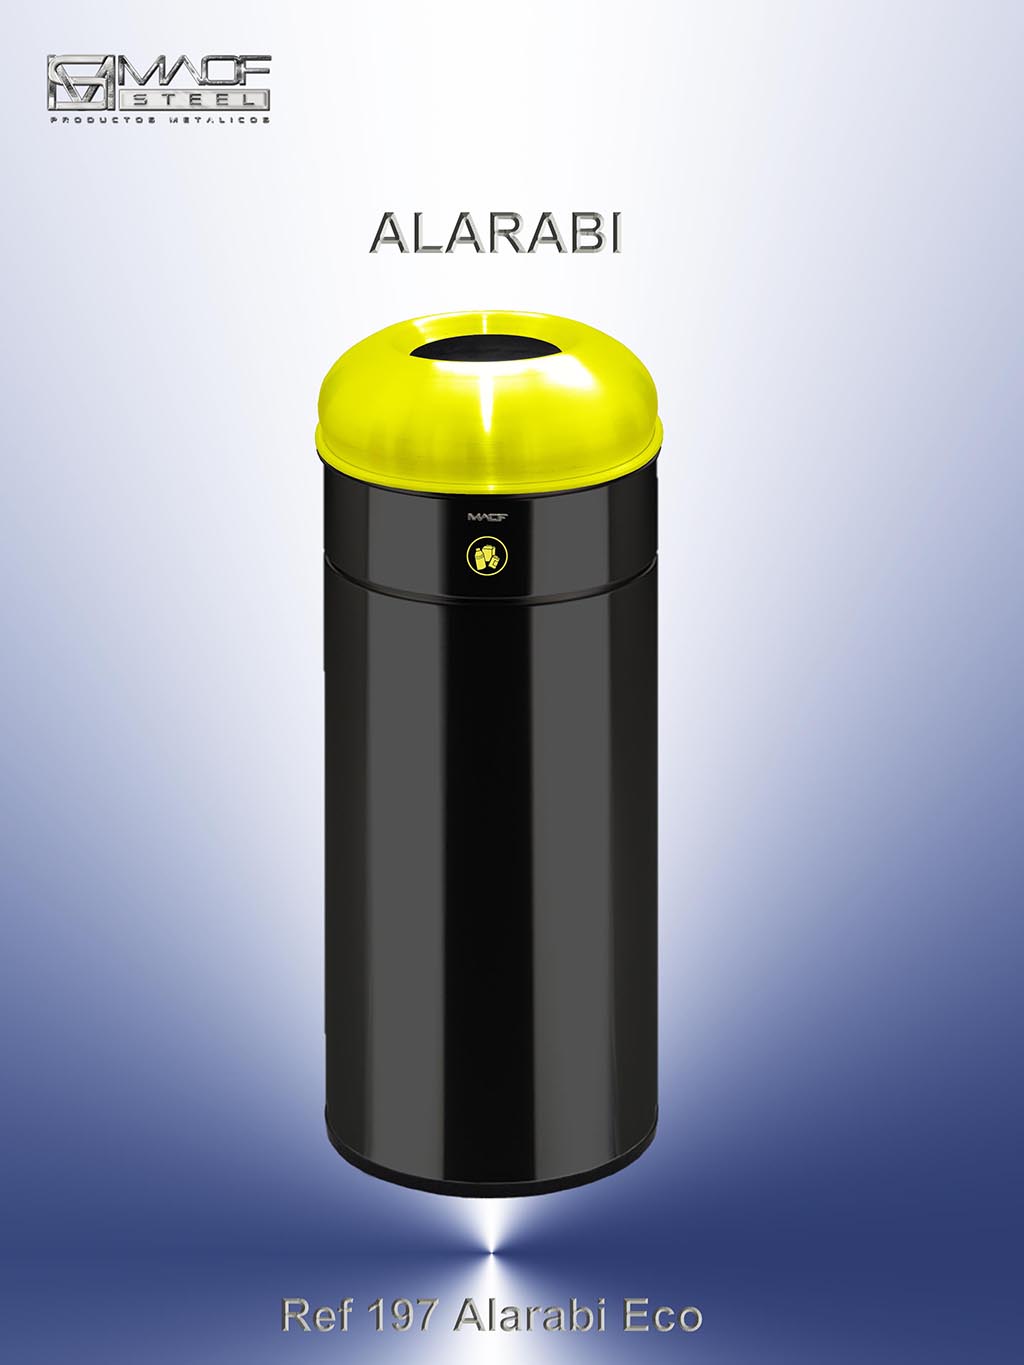 Alarabi Eco